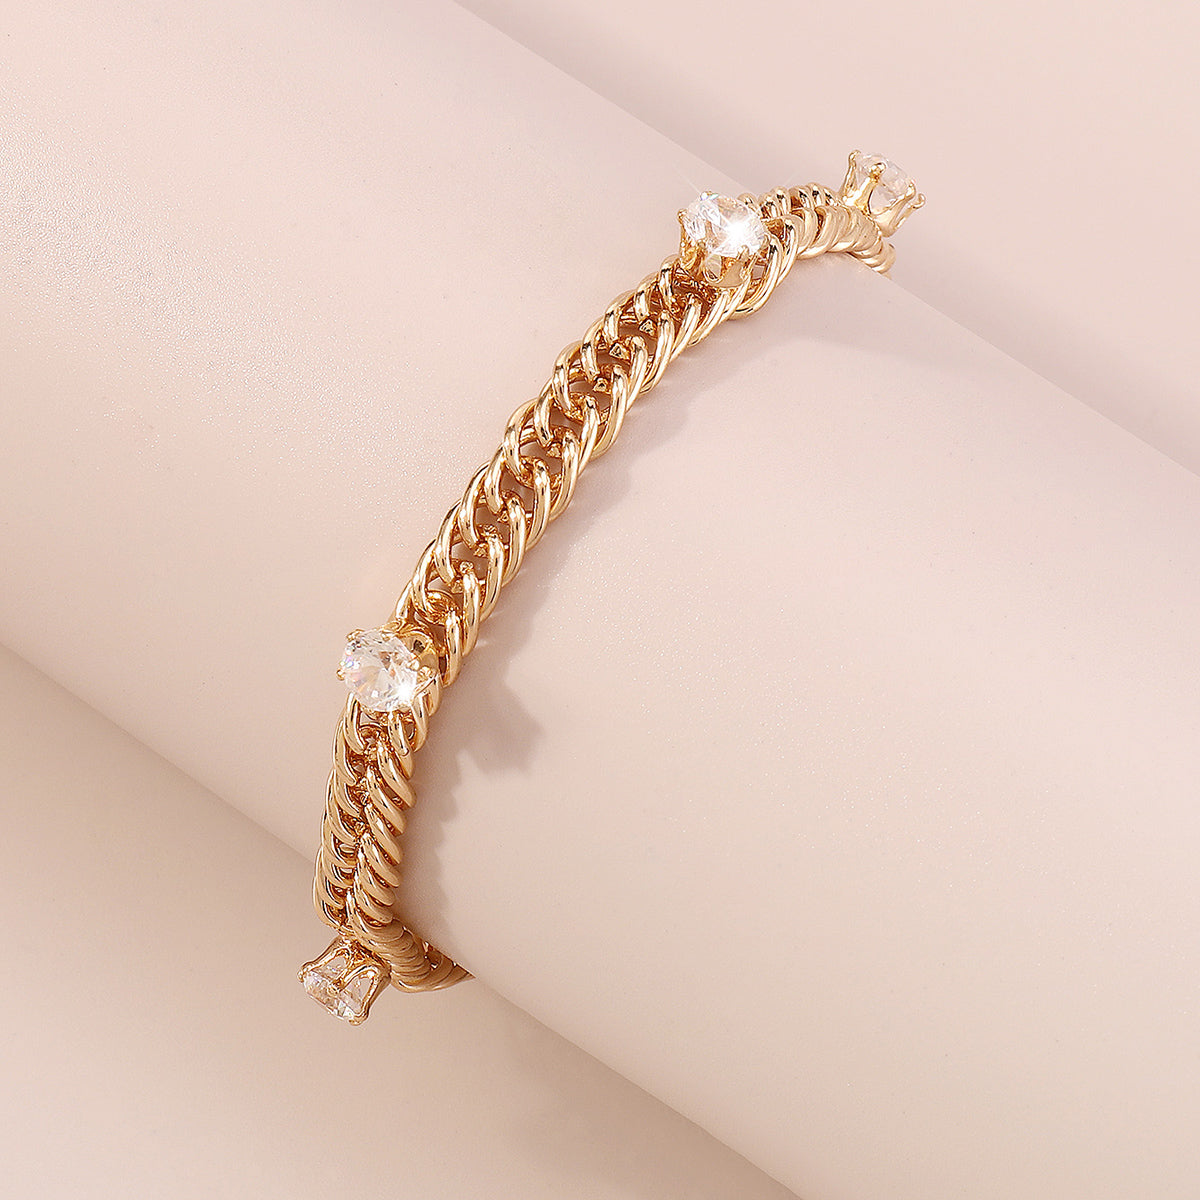 Charm Rhinestone Link Chain Bracelet medyjewelry